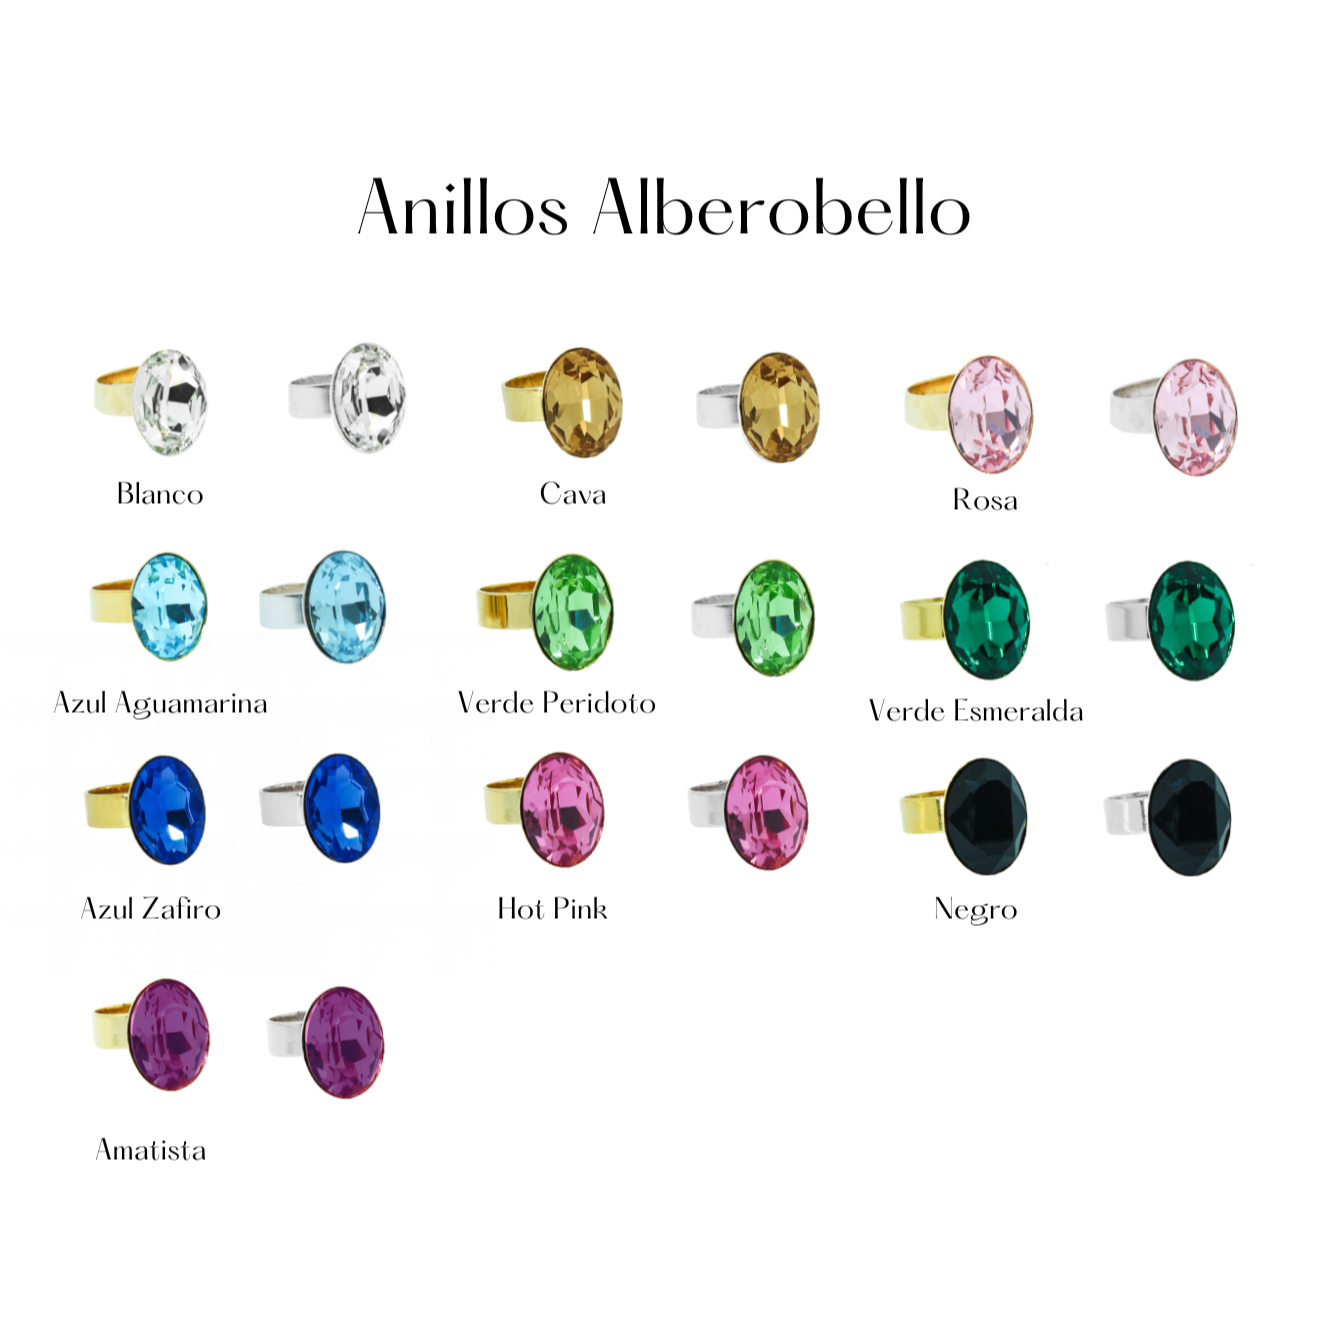 Anillo Alberobello